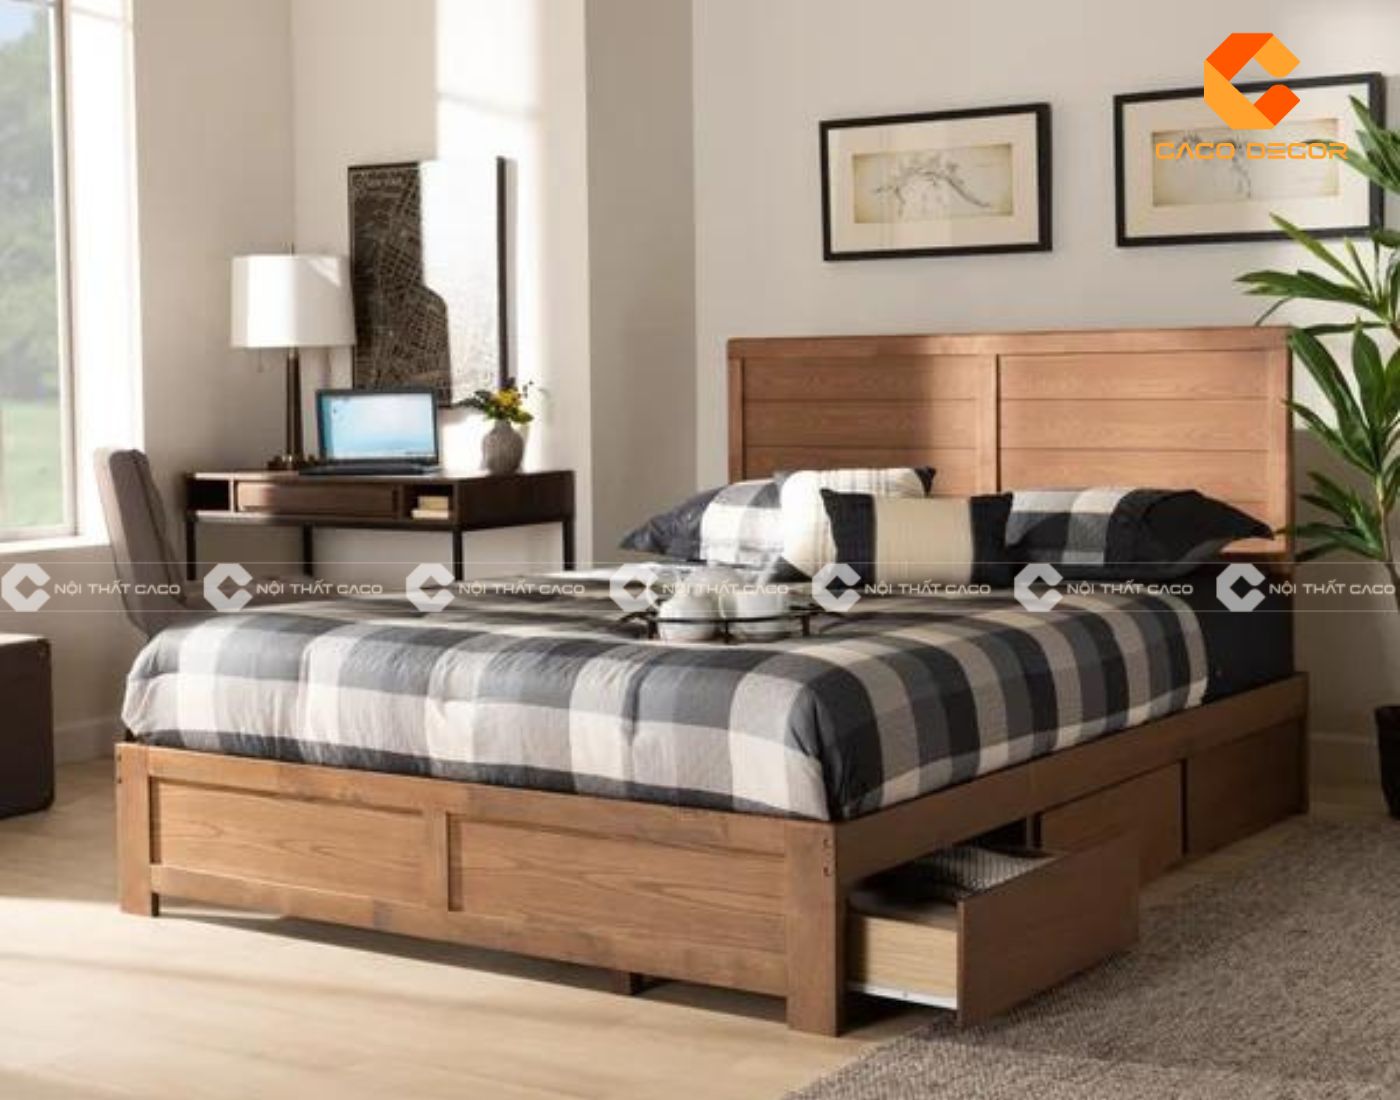 Giường gỗ thông minh đa năng giúp tiết kiệm tối đa không gian 13